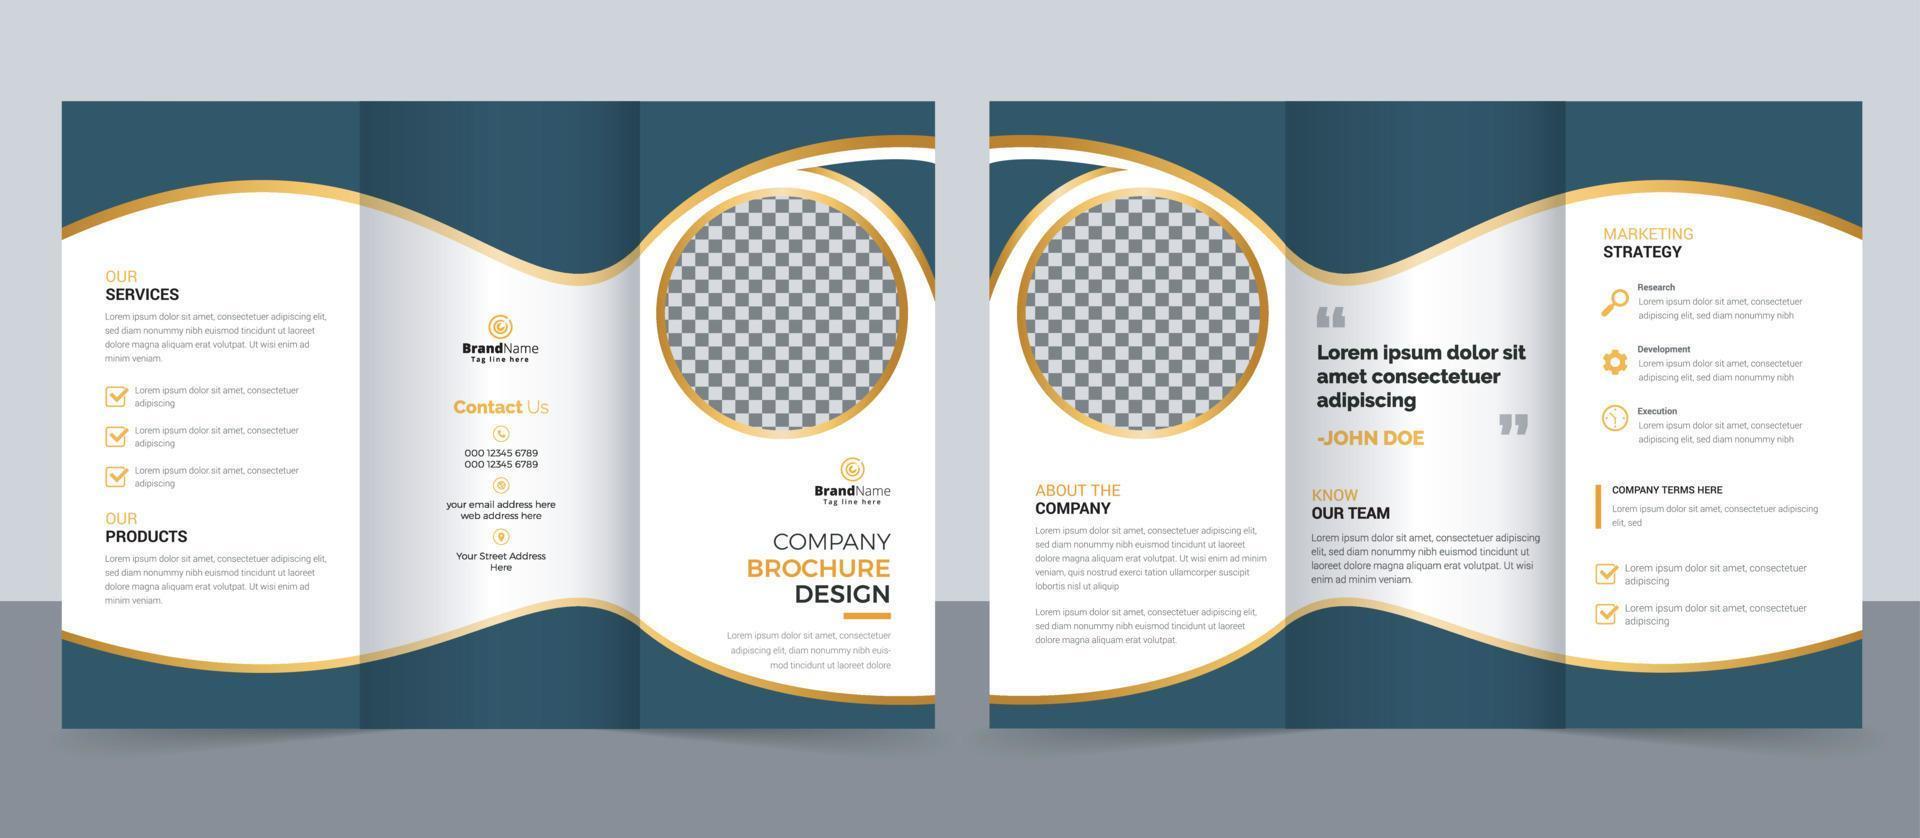 creatieve zakelijke moderne zakelijke driebladige brochure sjabloonontwerp. vector